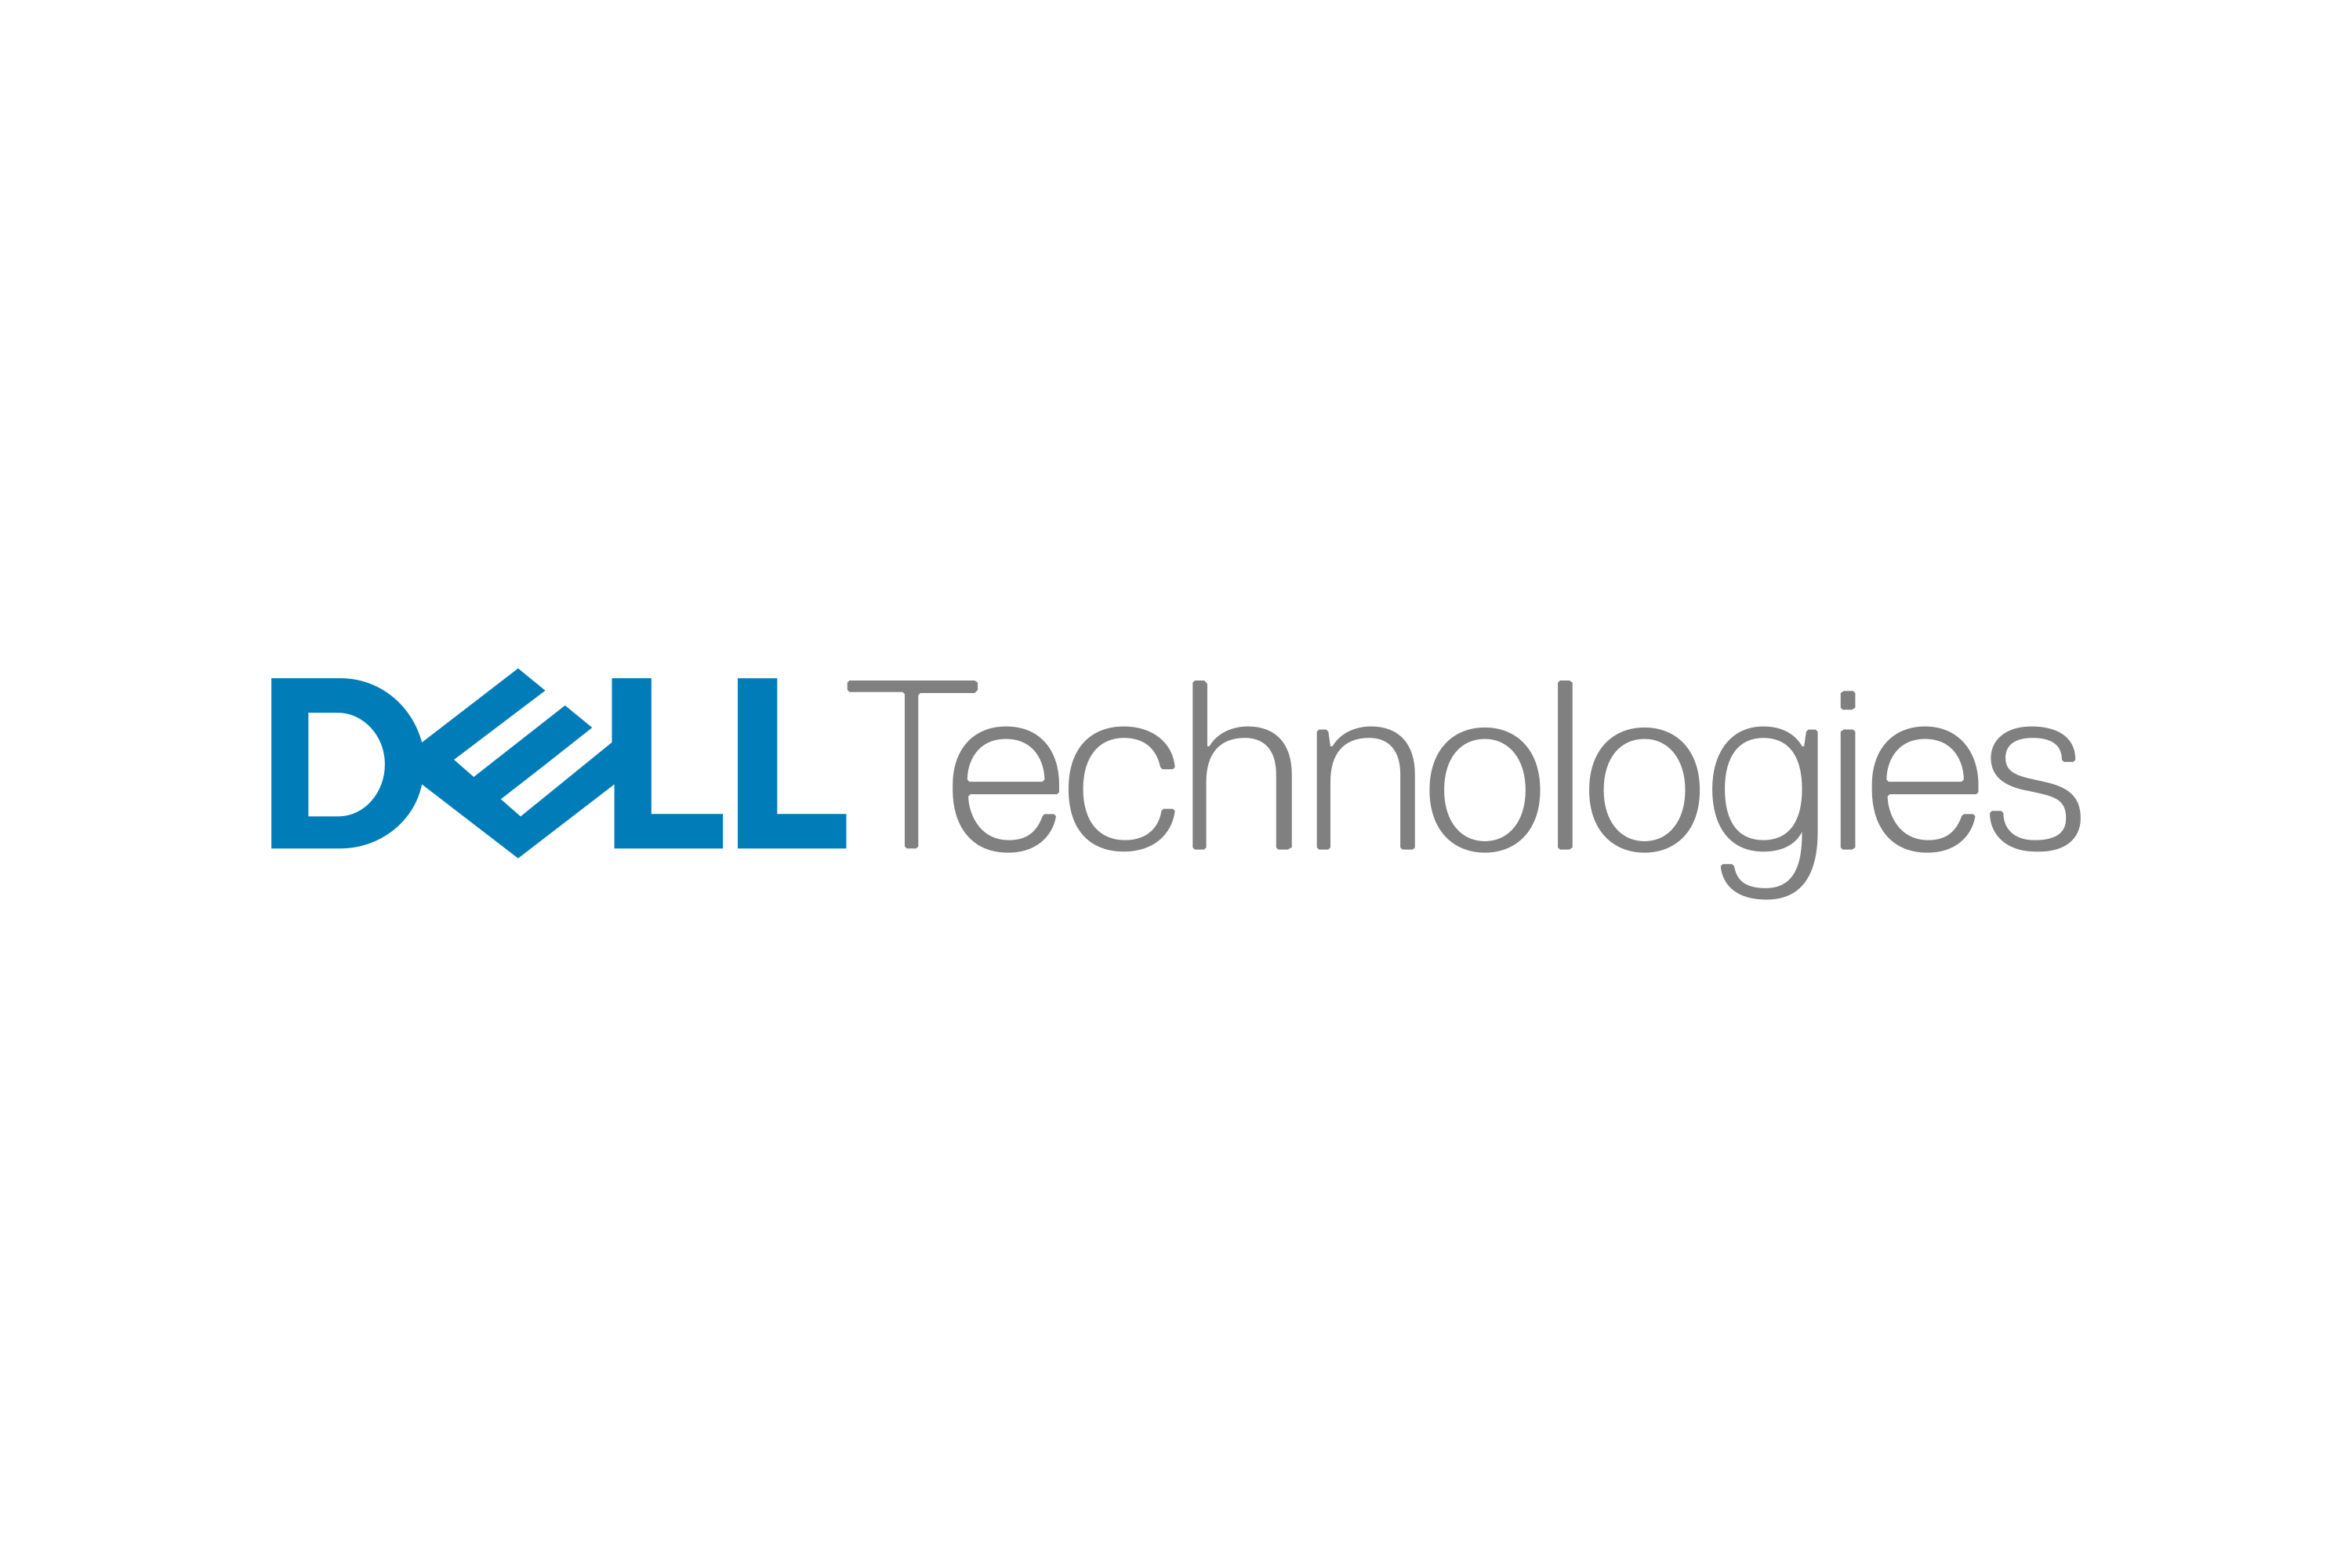 Dell_Technologies-Logo.wine